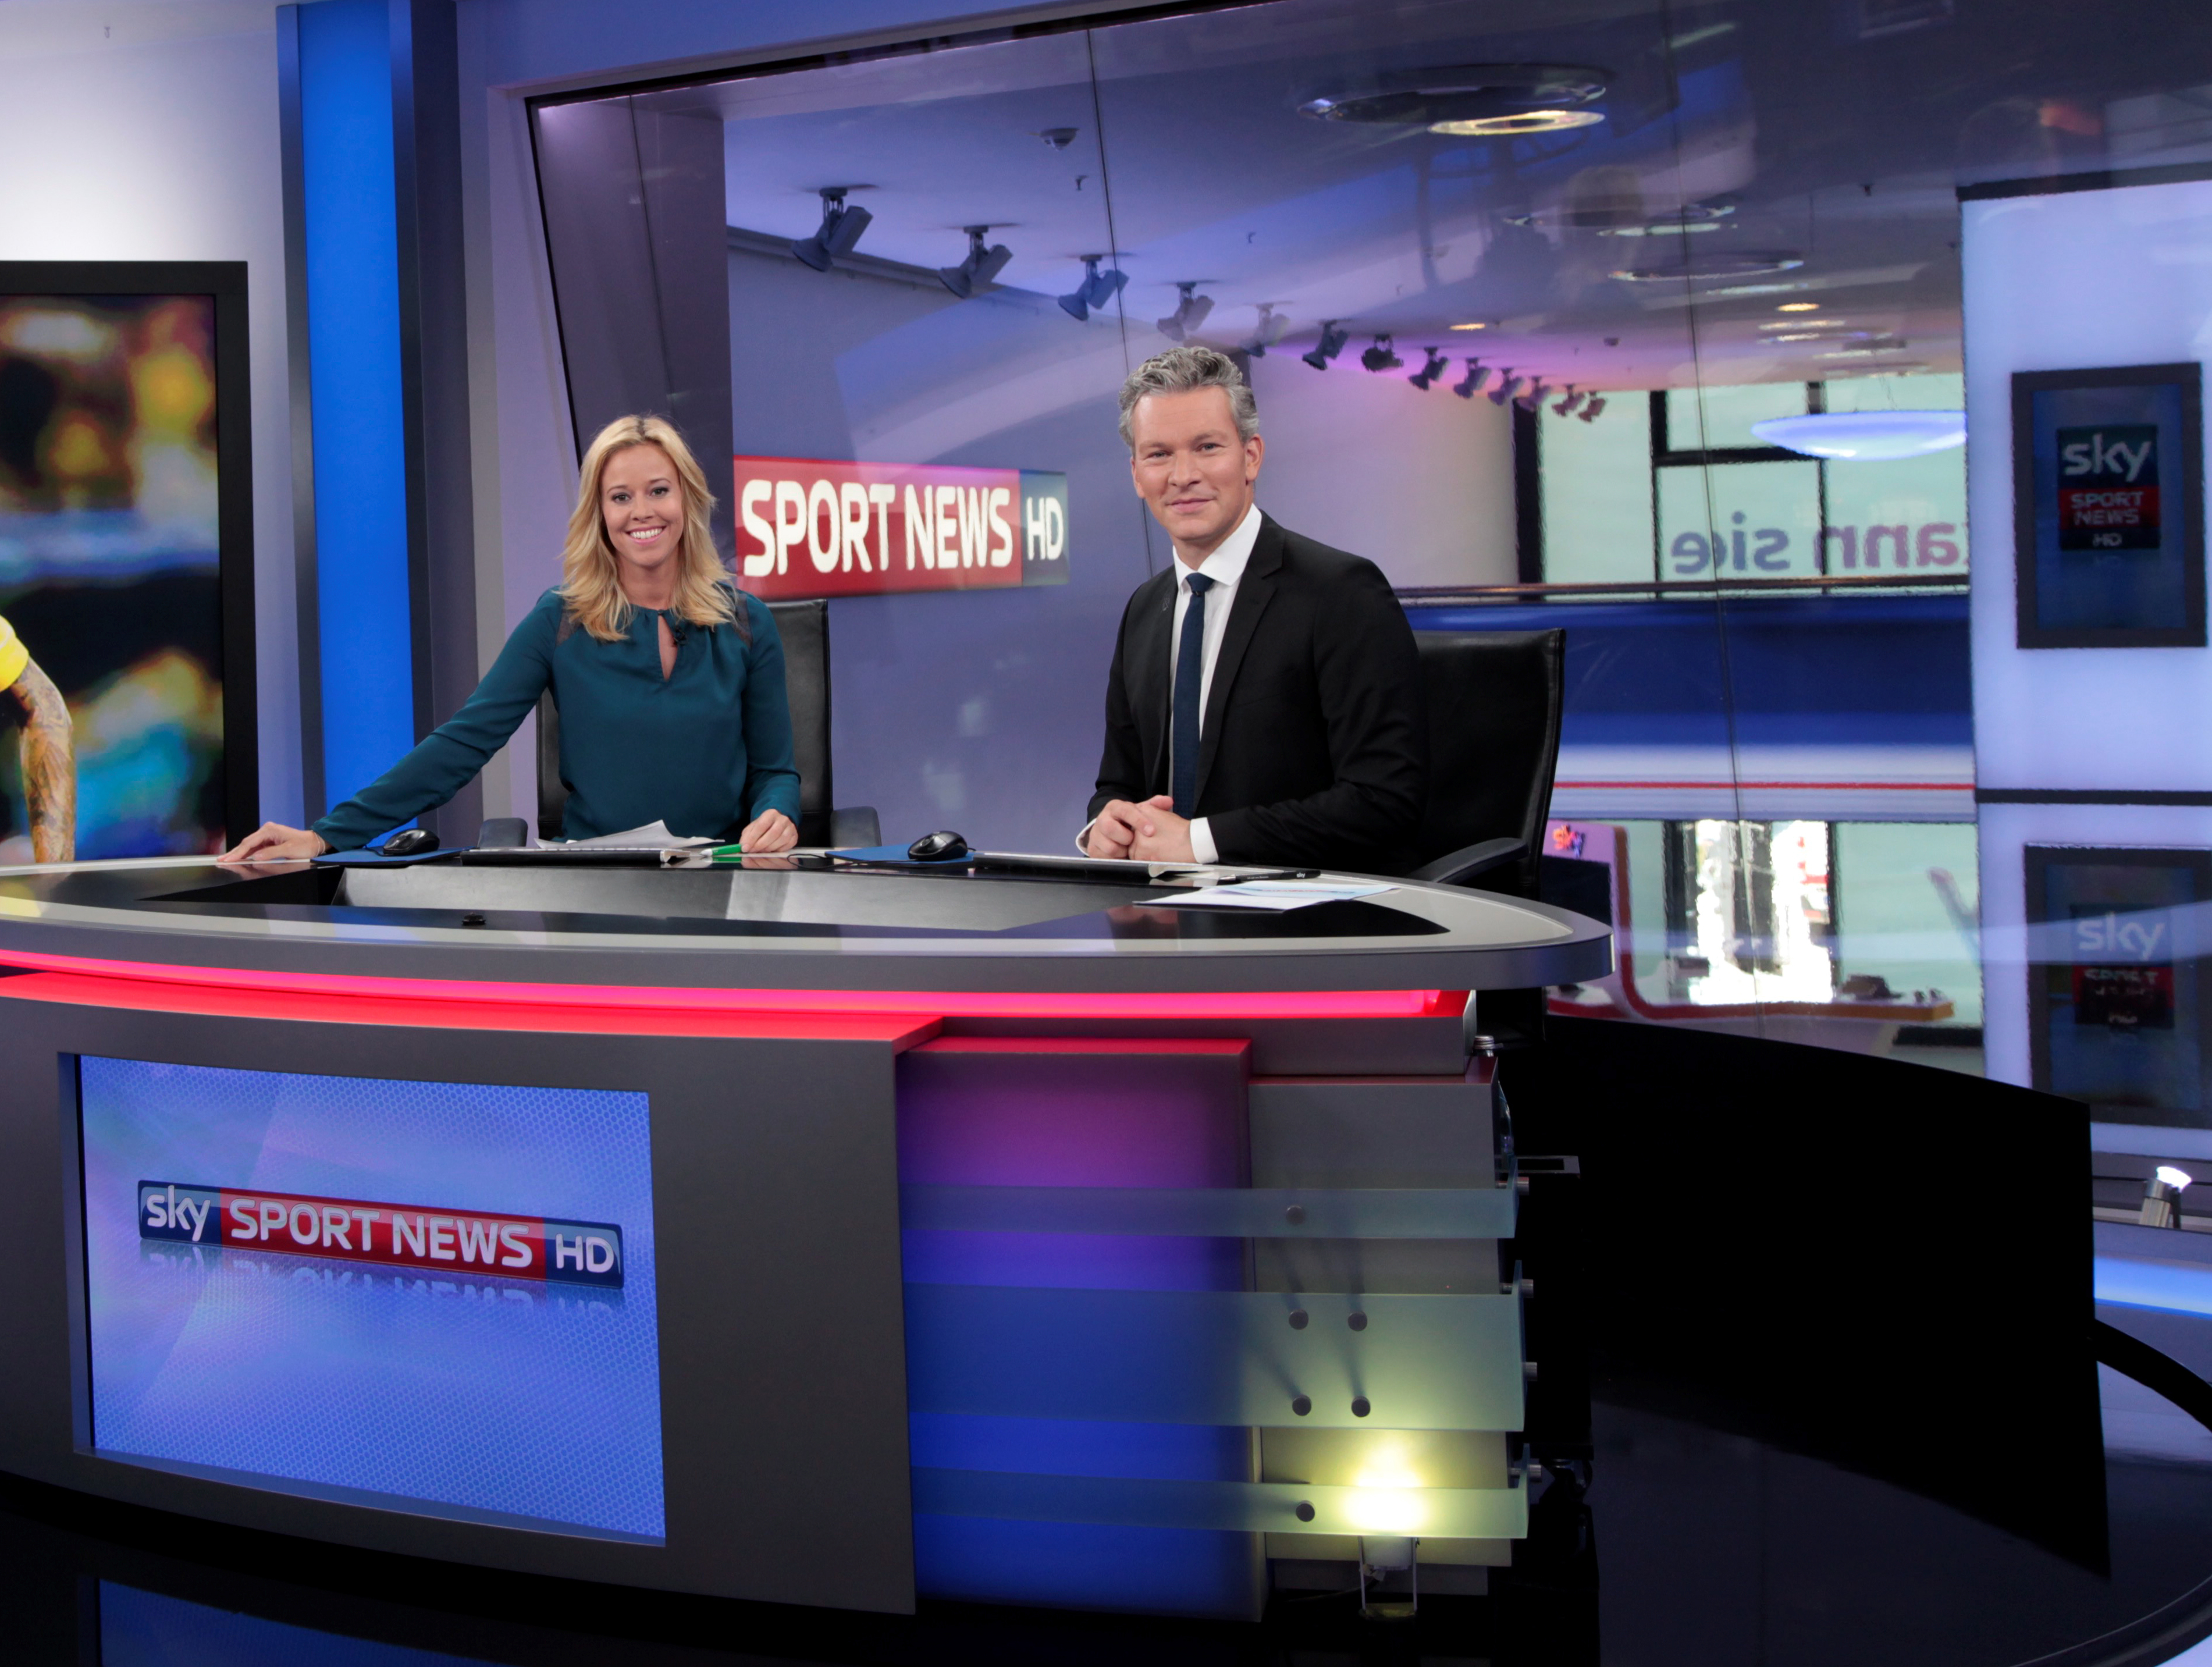 Sky Sport News Hd Free Tv